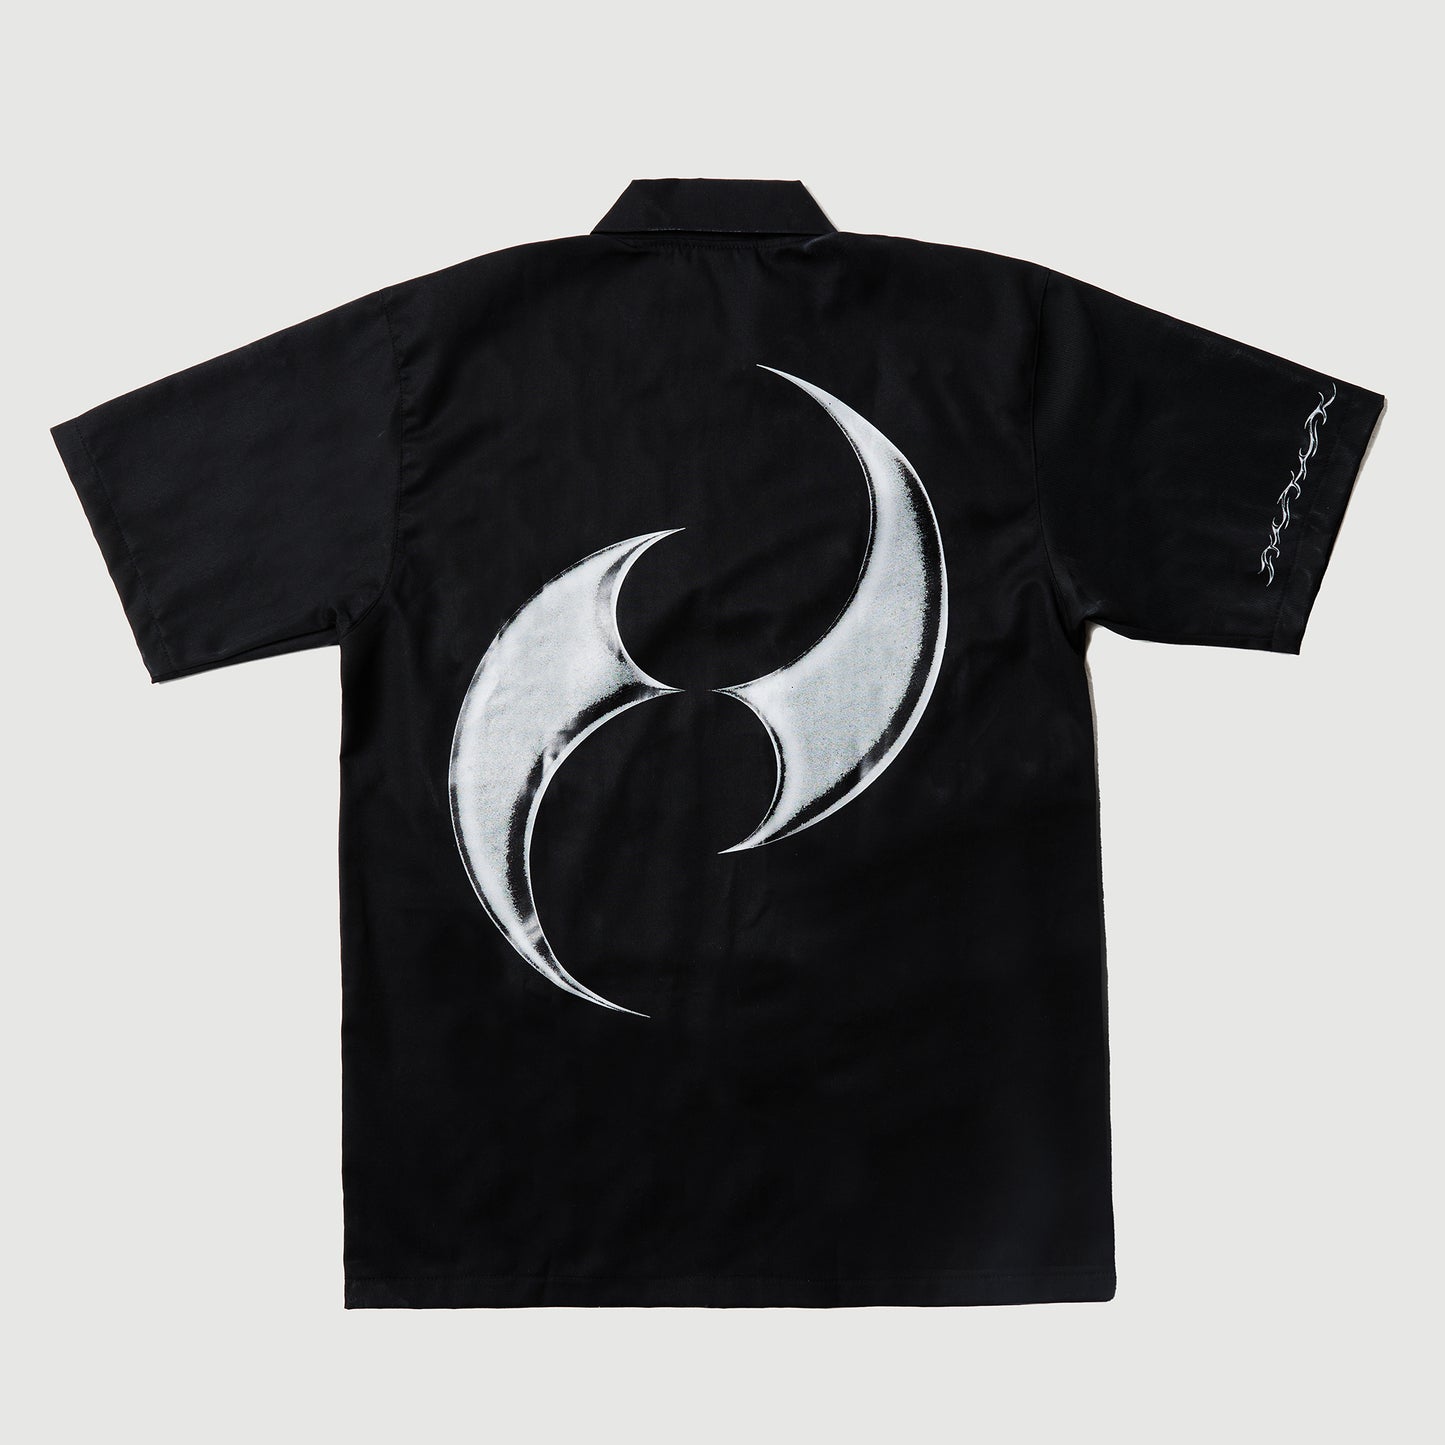 Shuriken Quarter Zip Shirt